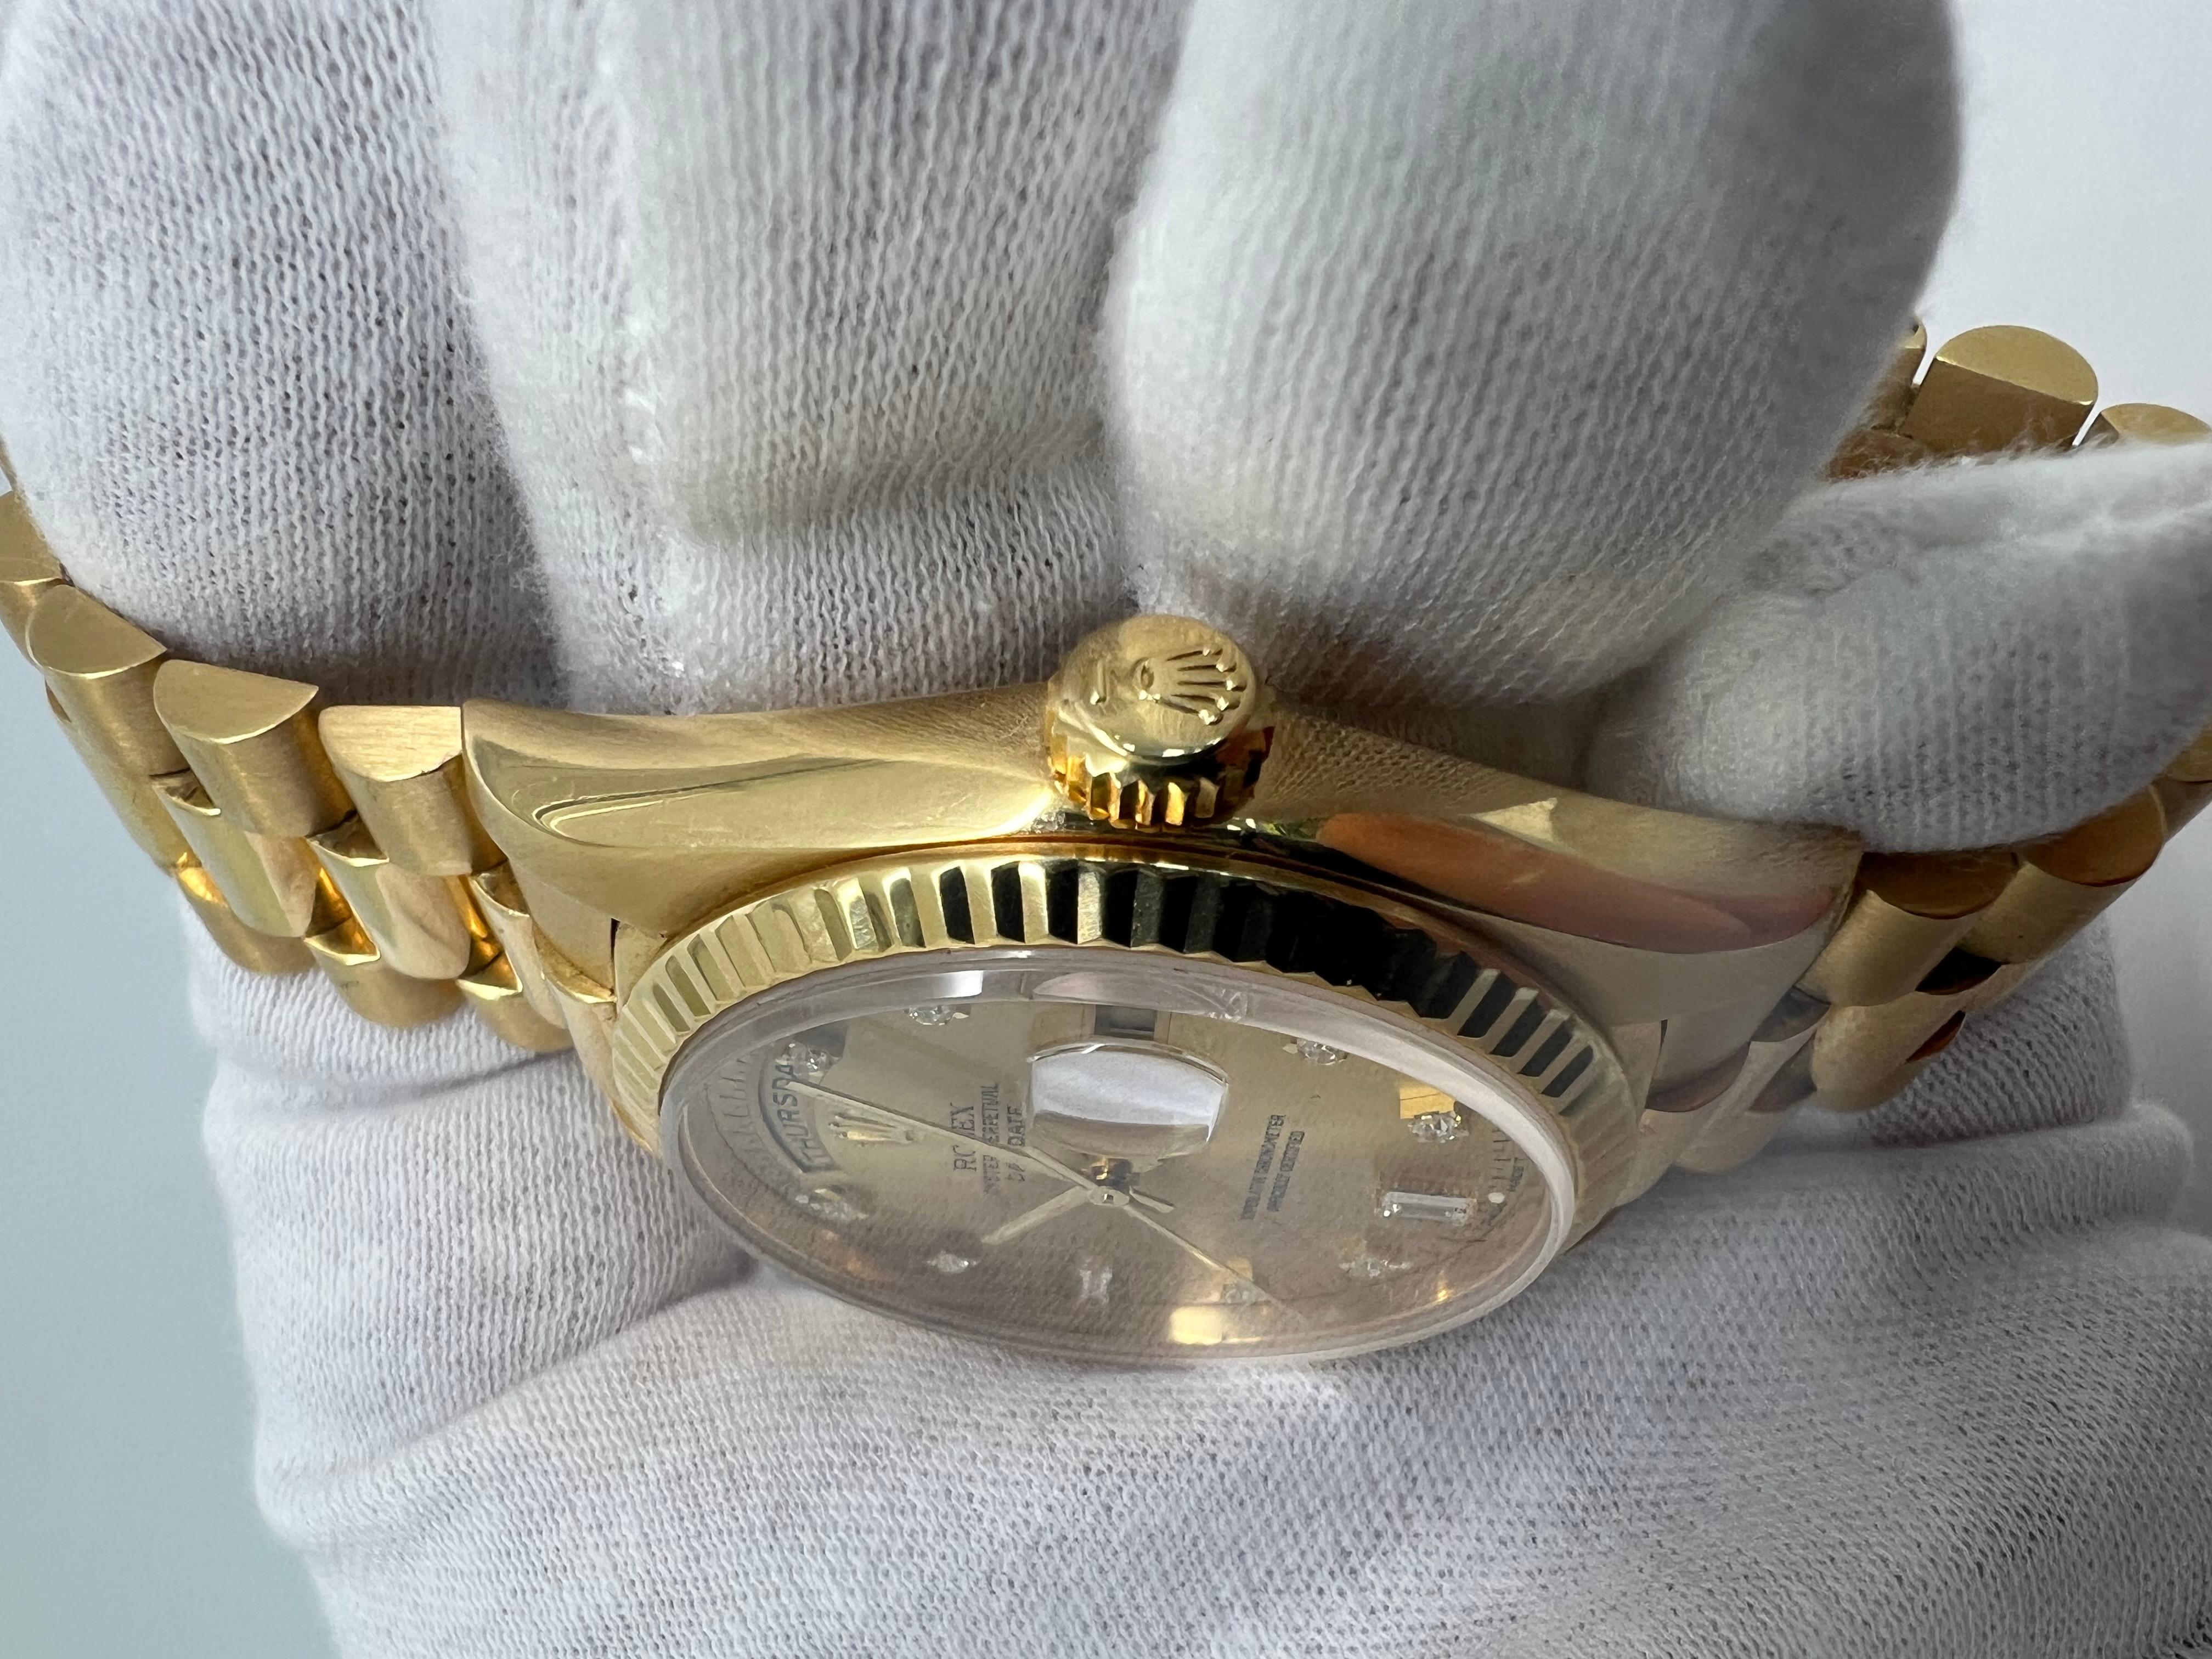 Rolex Montre d'usine Daydate avec cadran en diamants de 36 mm

Toutes les pièces d'origine de Rolex

cadran baguette diamantée d'usine

double mouvement rapide de l'ensemble !

bracelet serré

Excellent état 

Livré avec une boîte Rolex et une